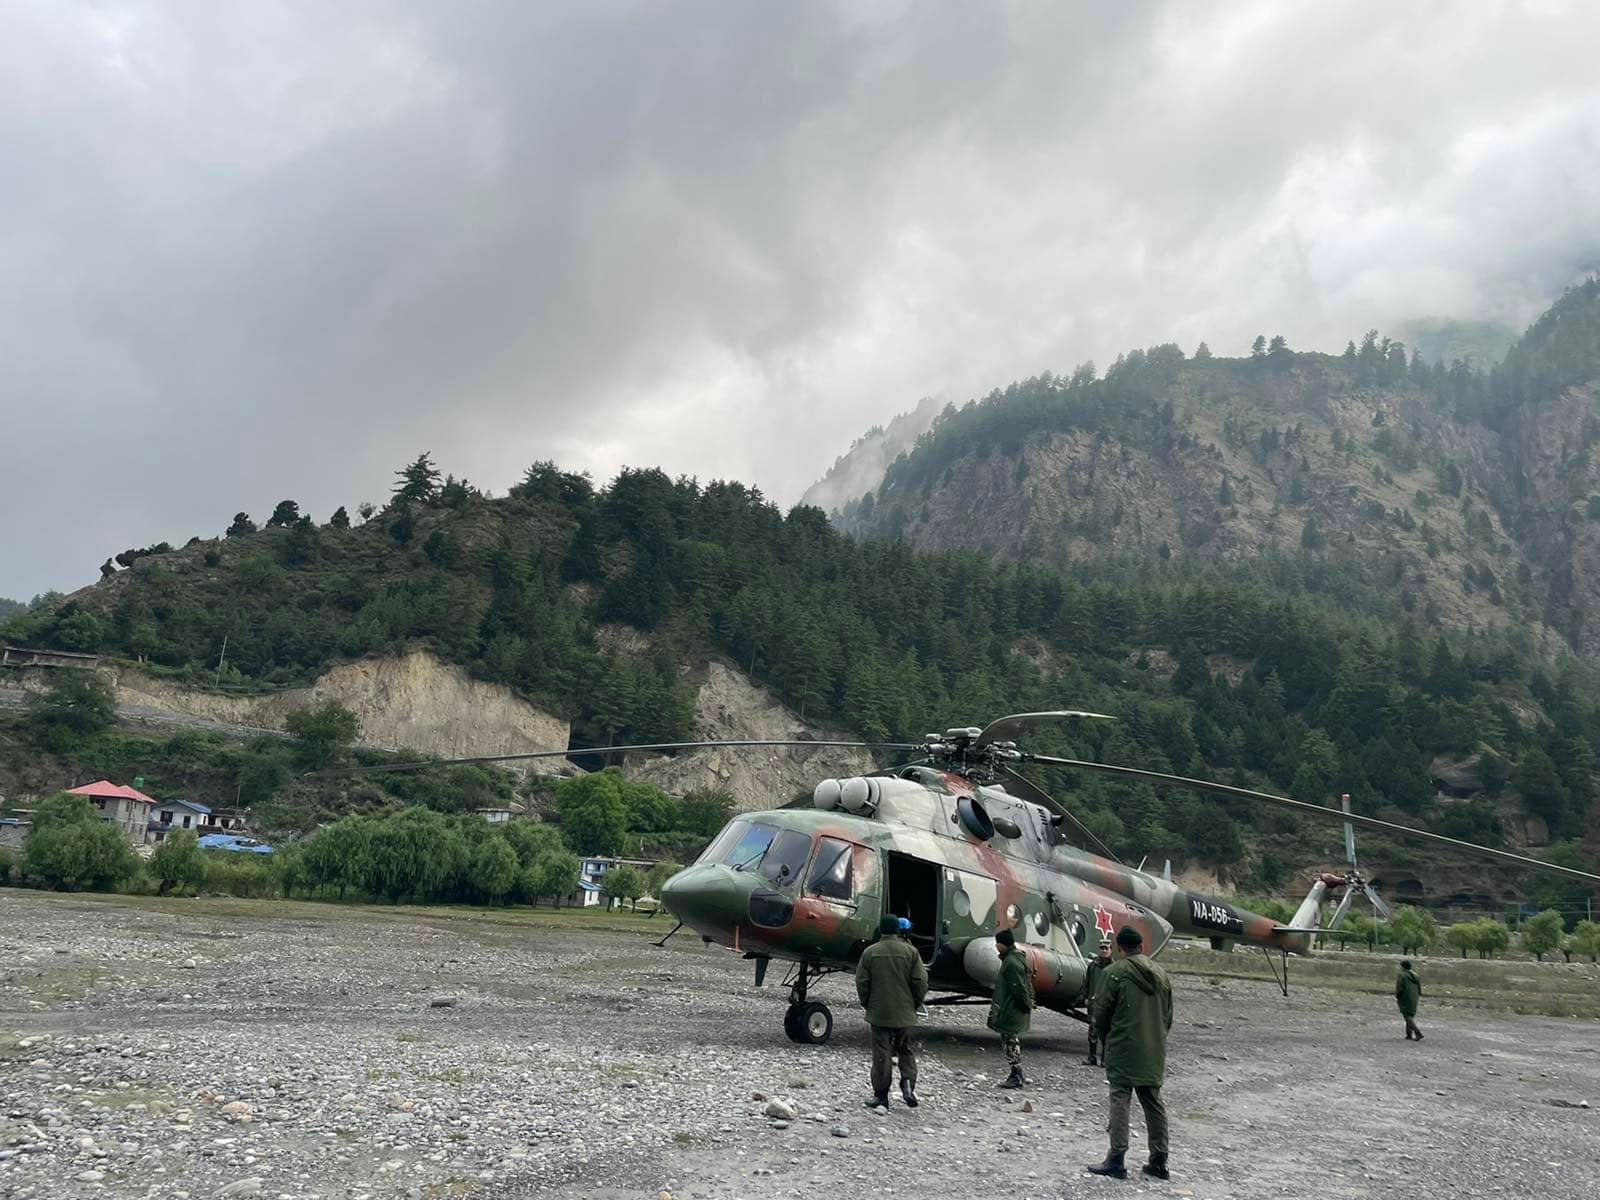 तारा एयरको विमान दुर्घटना : मृत्यु भएका १२ जनाको शव काठमाडौं ल्याइयो